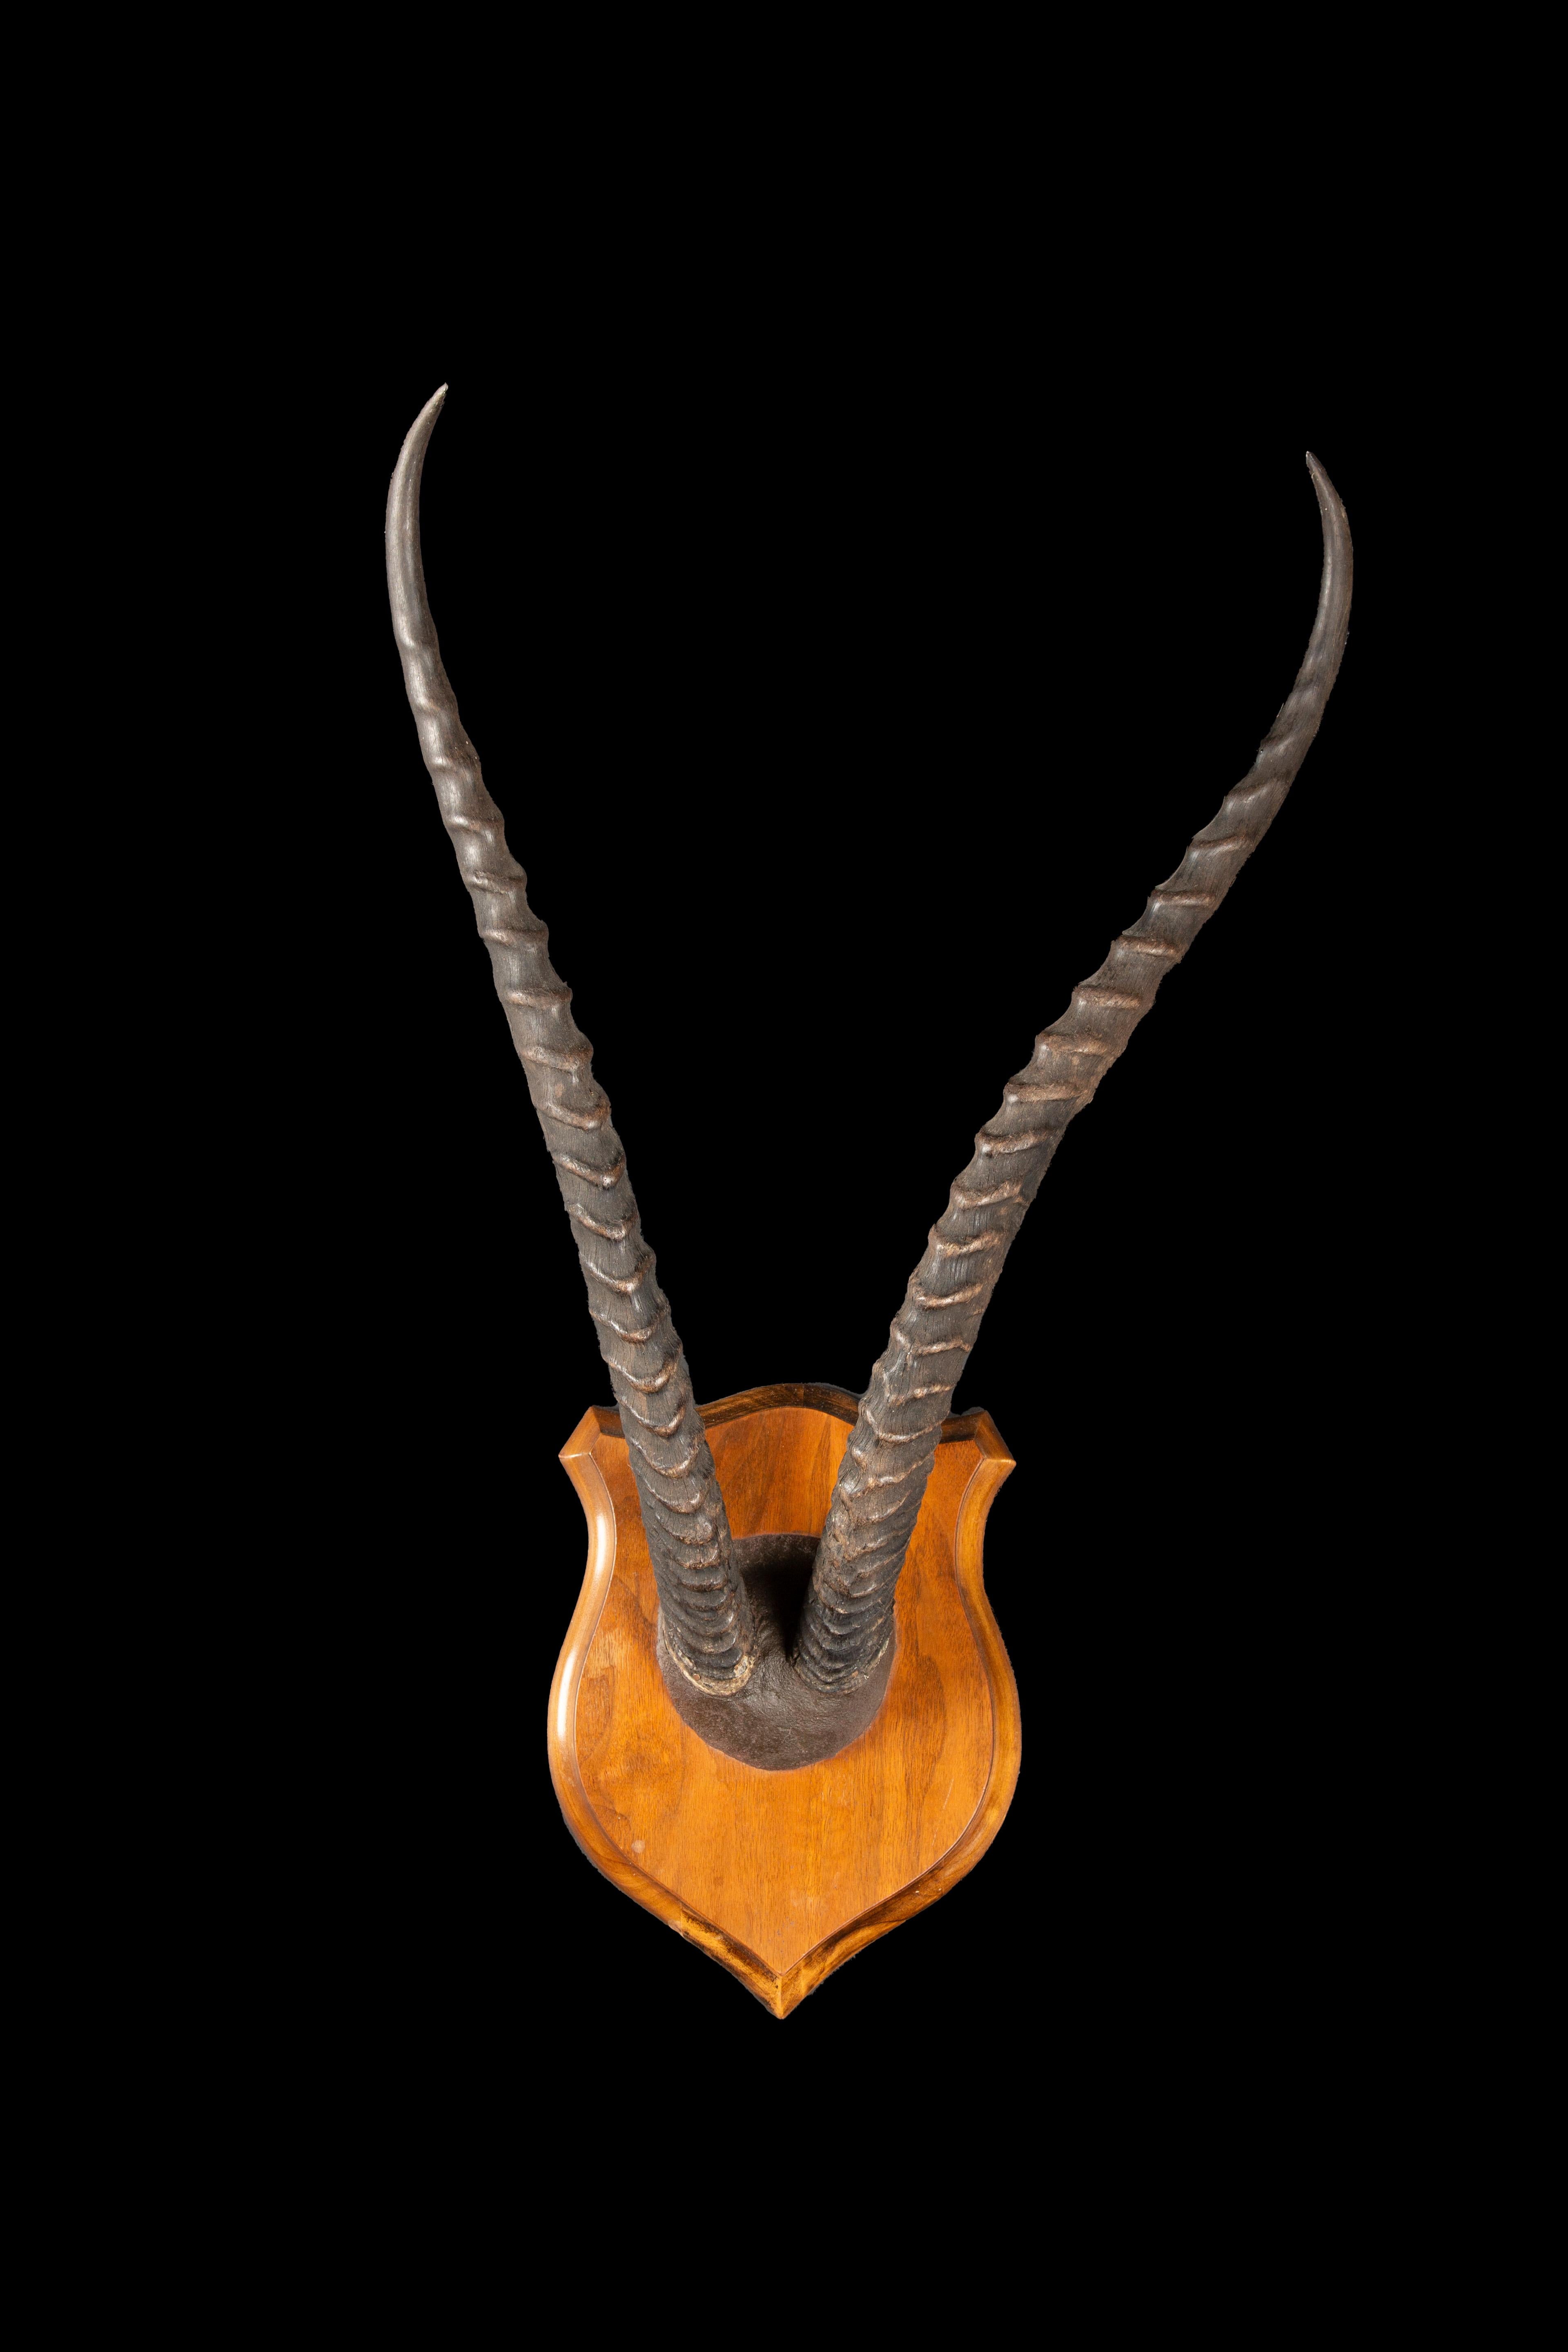 Plaque-Mounted Gazelle Horns, ein fesselndes Stück Taxidermie-Kunst, das die unvergleichliche Schönheit der Grants Gazelle Hörner zeigt. Dieses sorgfältig gefertigte Präparat ist ein Zeugnis für die natürliche Eleganz und Anmut dieser prächtigen